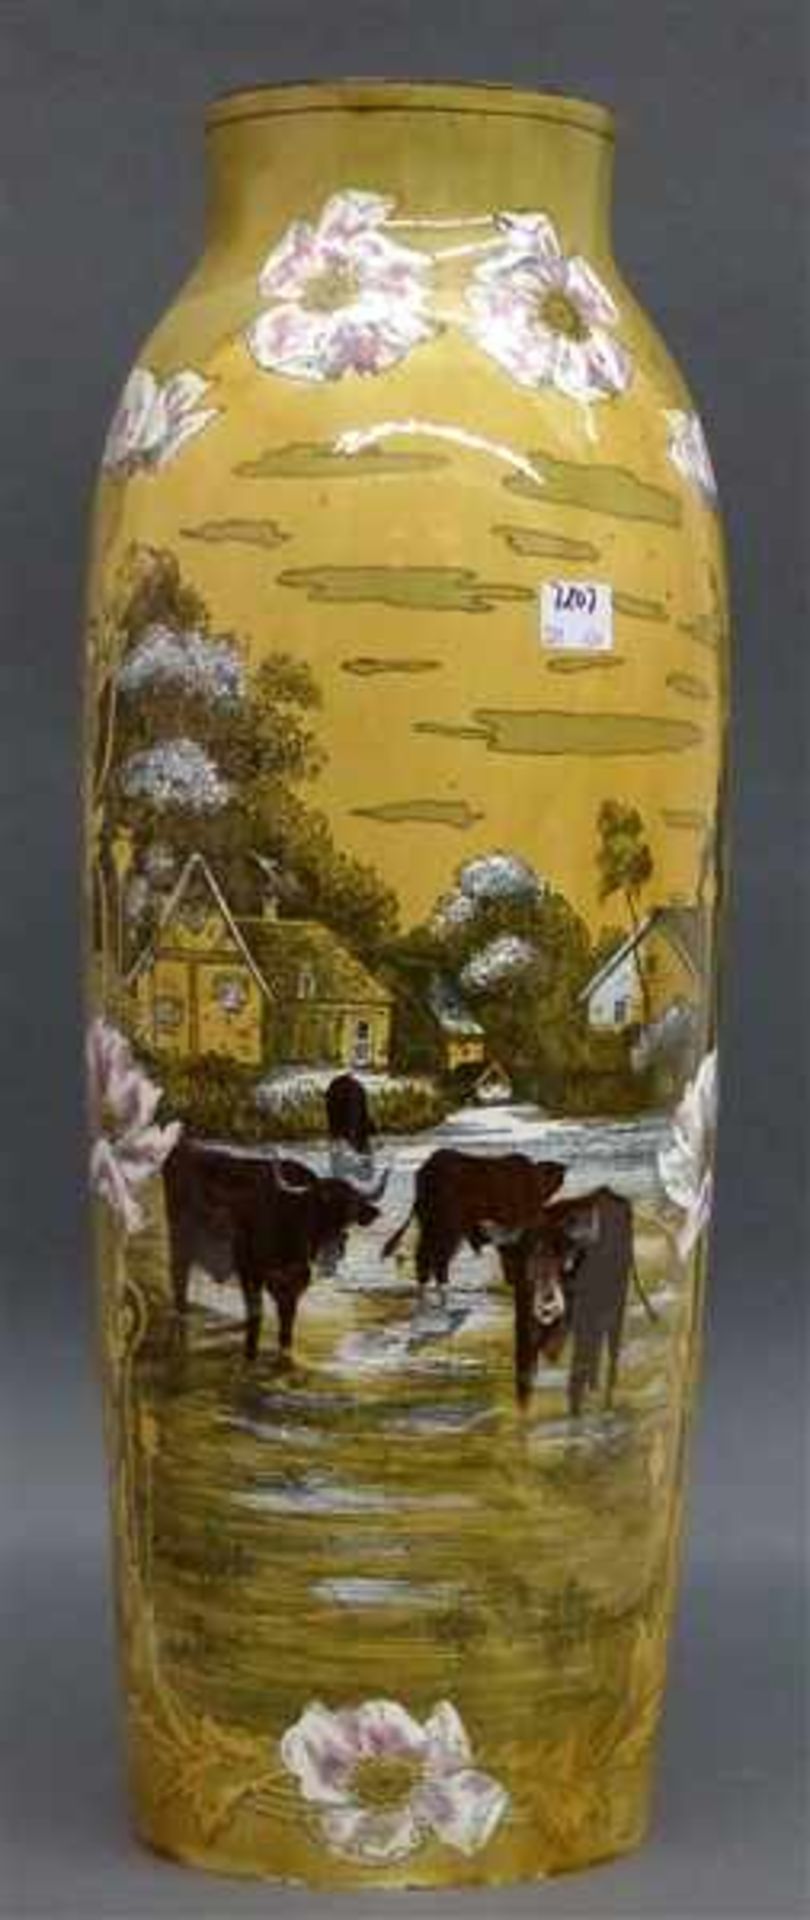 Jugendstilvase England, um 1930, hellbraune Glasur, floral bemalt, Landschaftsmotiv mit Häusern